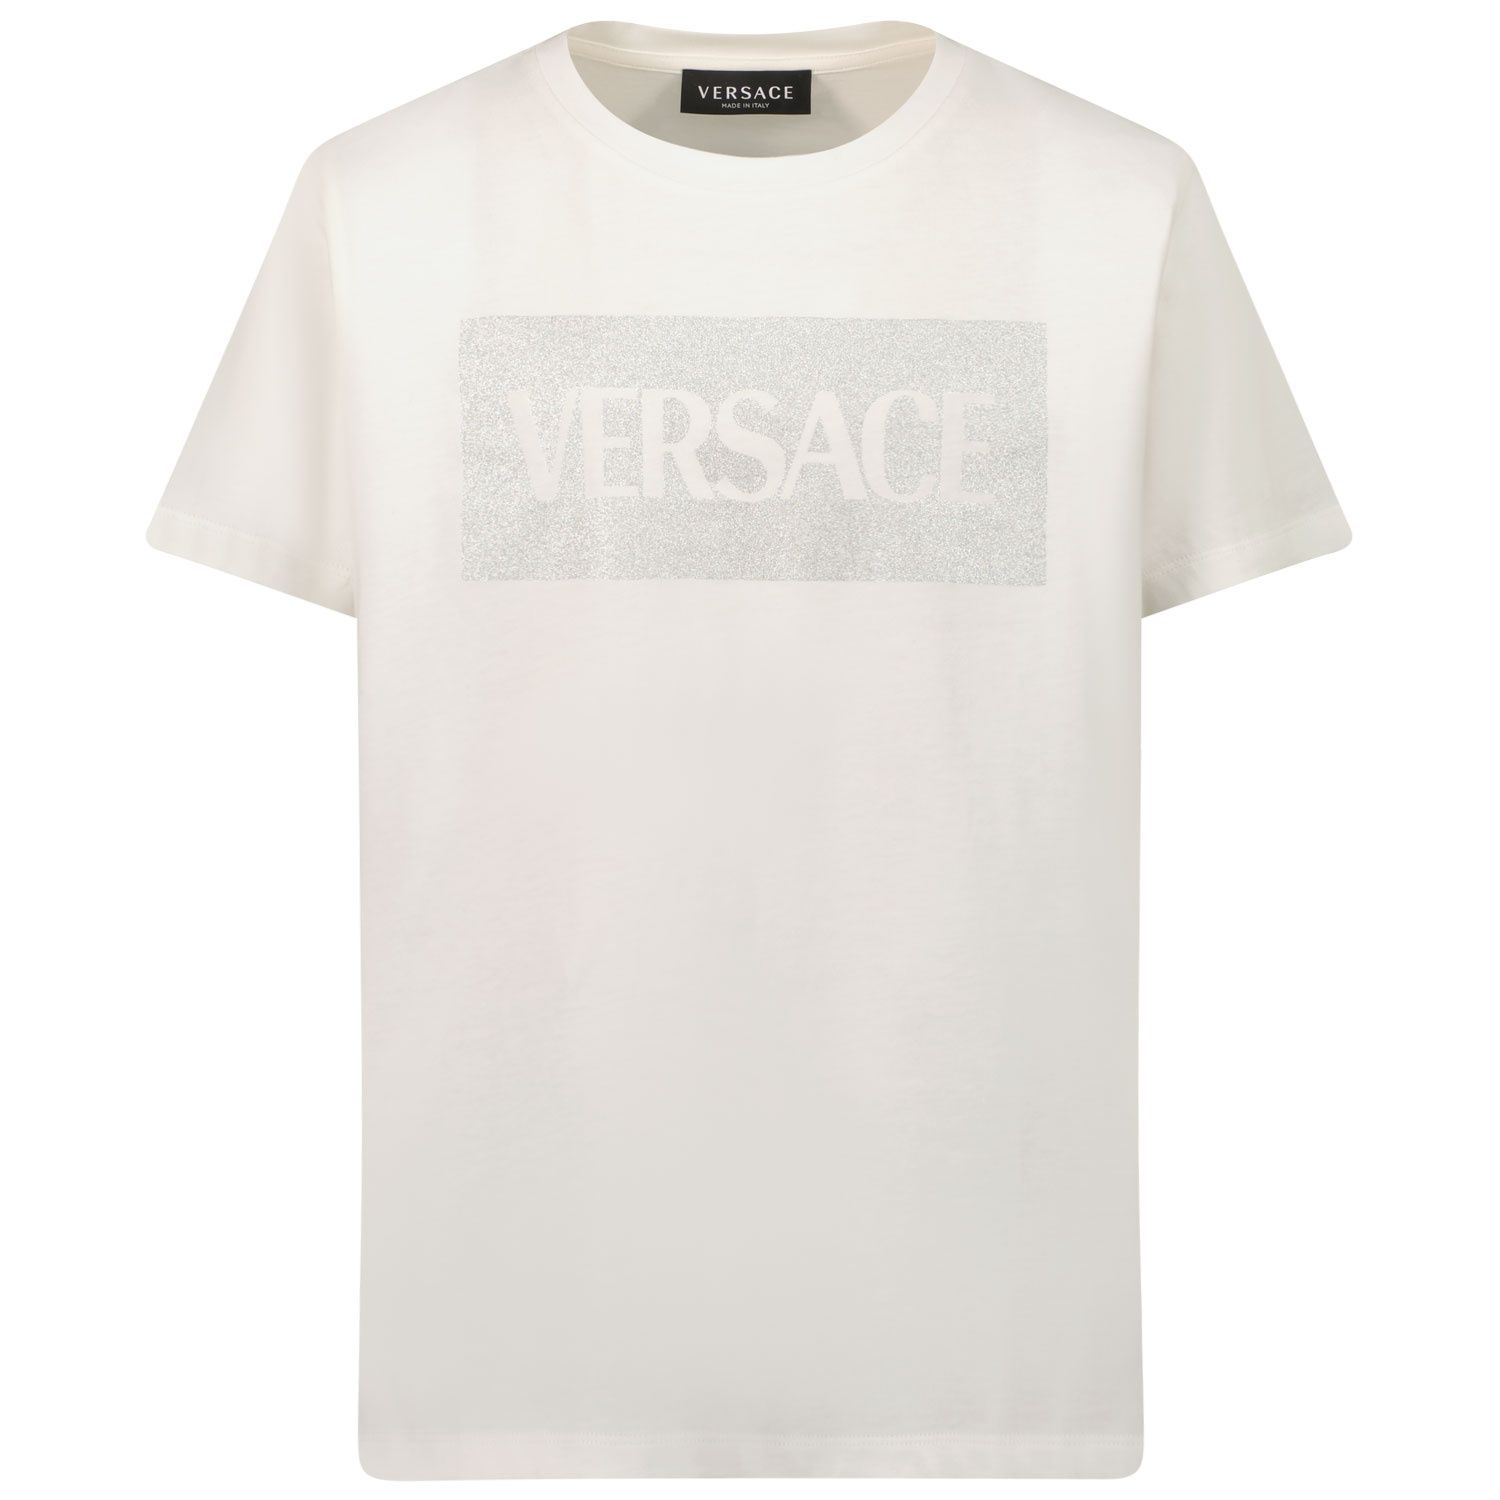 Afbeelding van Versace 1000052 1A1343 kinder t-shirt wit